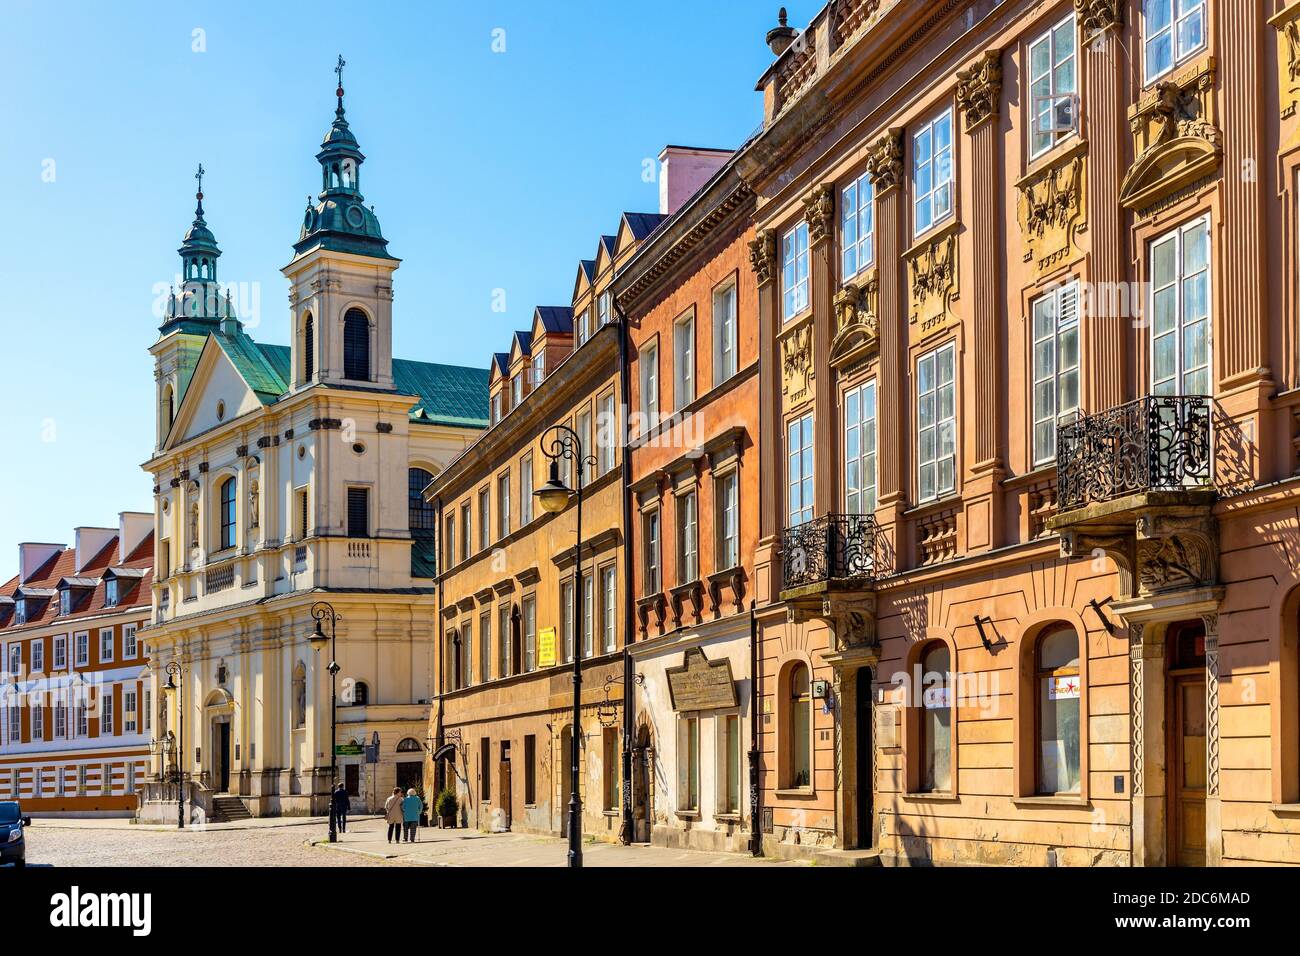 Varsovie, Mazovie / Pologne - 2020/05/10: Vue panoramique de la ville historique de Nowe Miasto quartier avec l'église de l'ordre Pauline du Saint-Esprit - kosciol sw. Banque D'Images